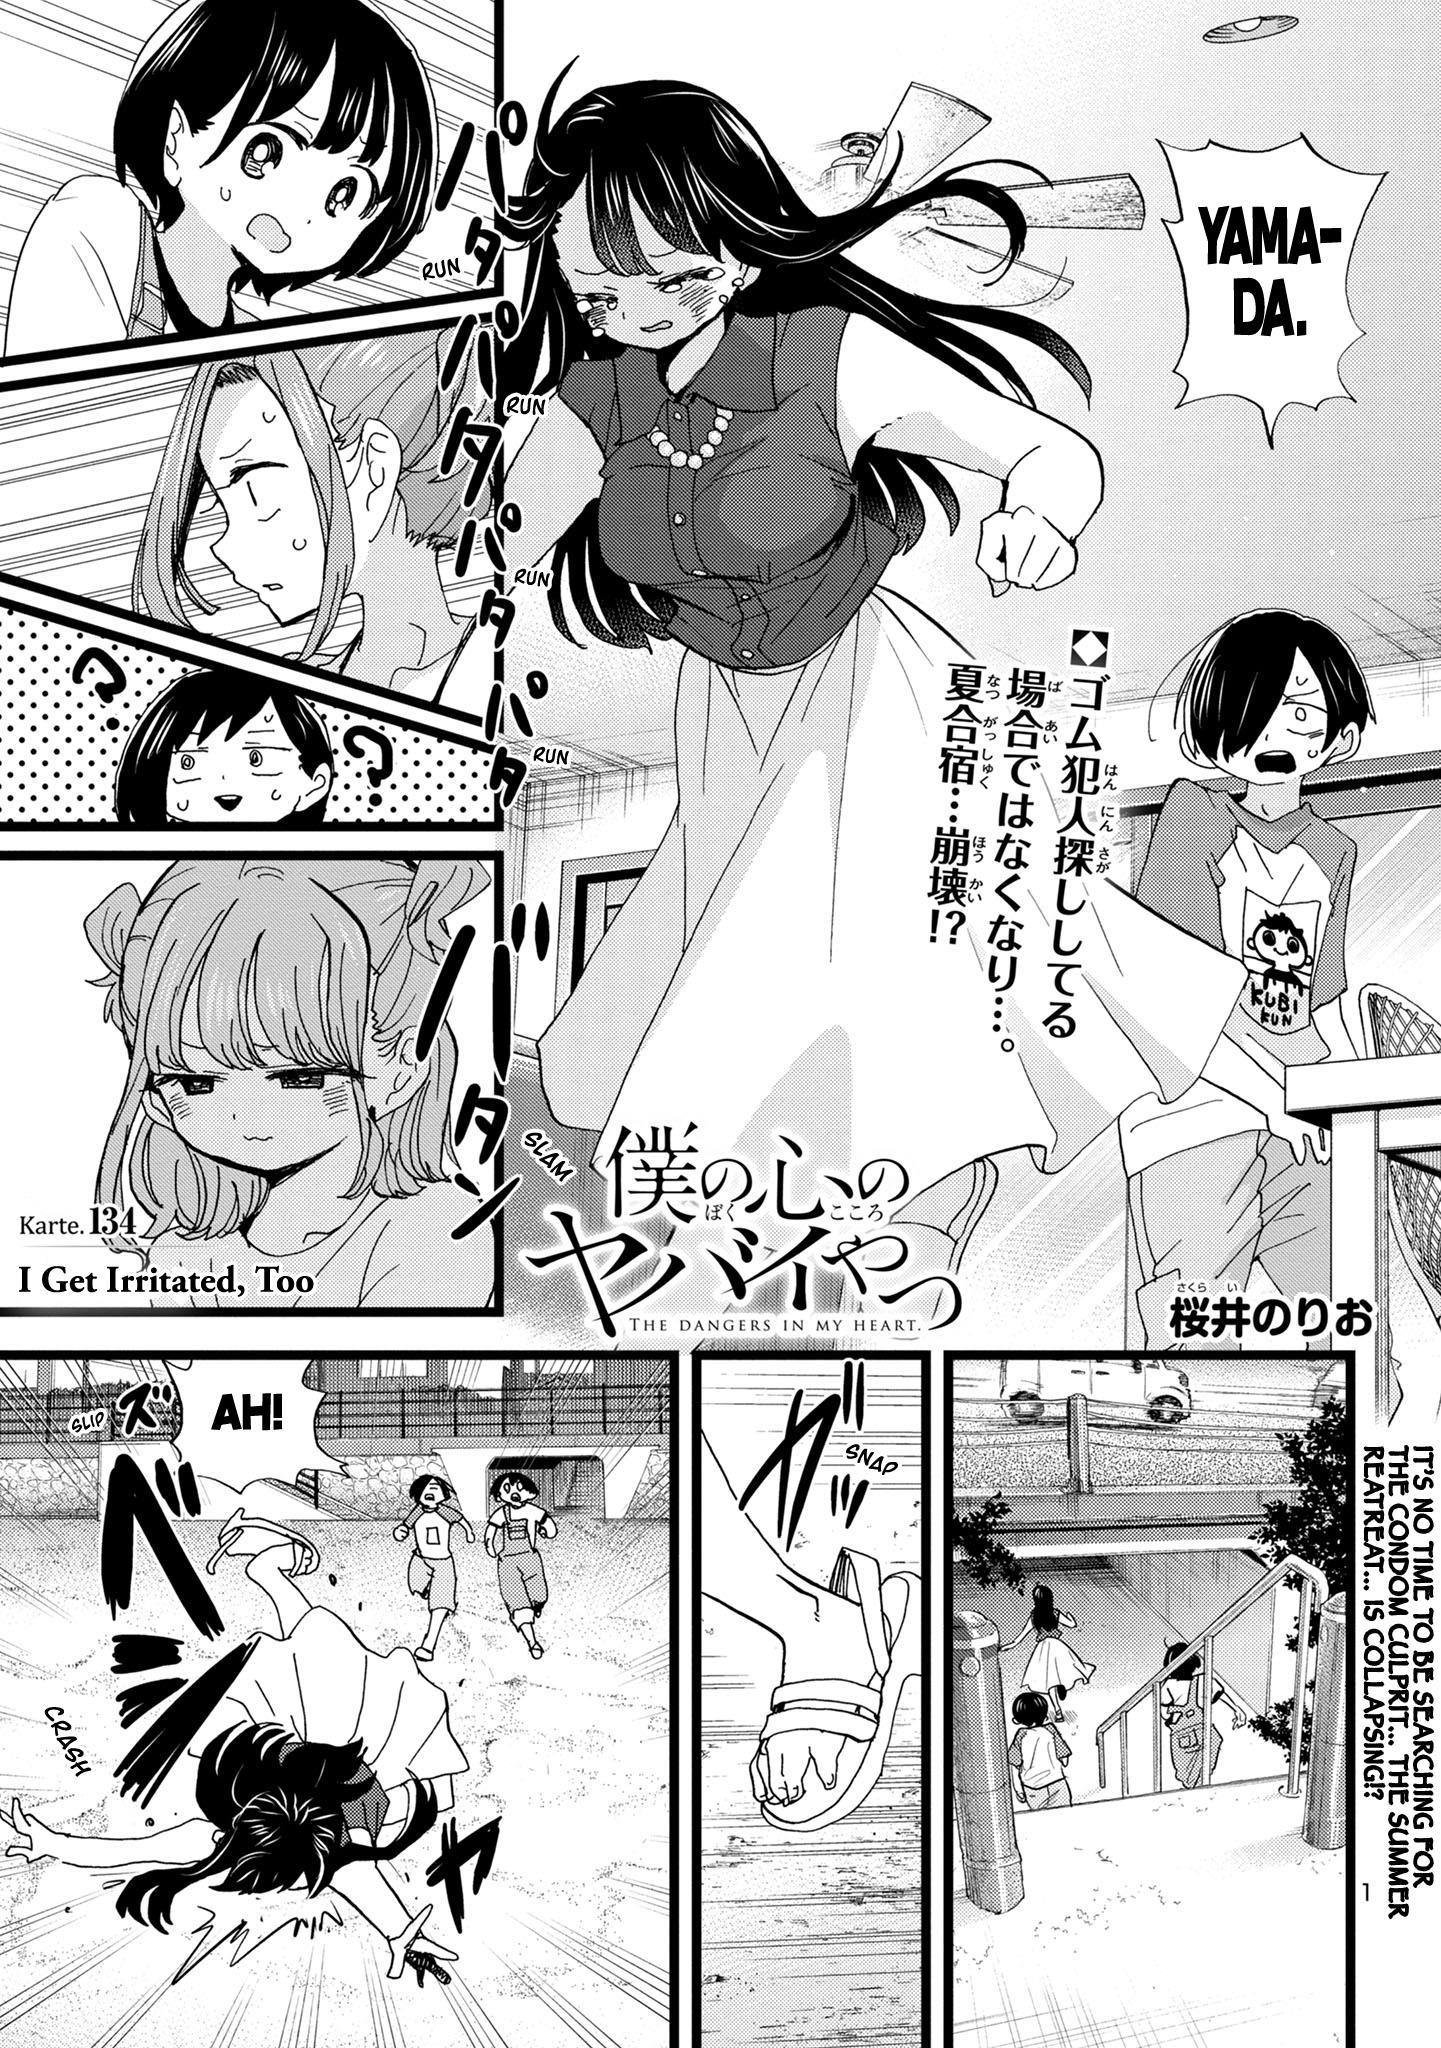 Boku no Kokoro no Yabai Yatsu Vol.3 Ch.39 Page 1 - Mangago